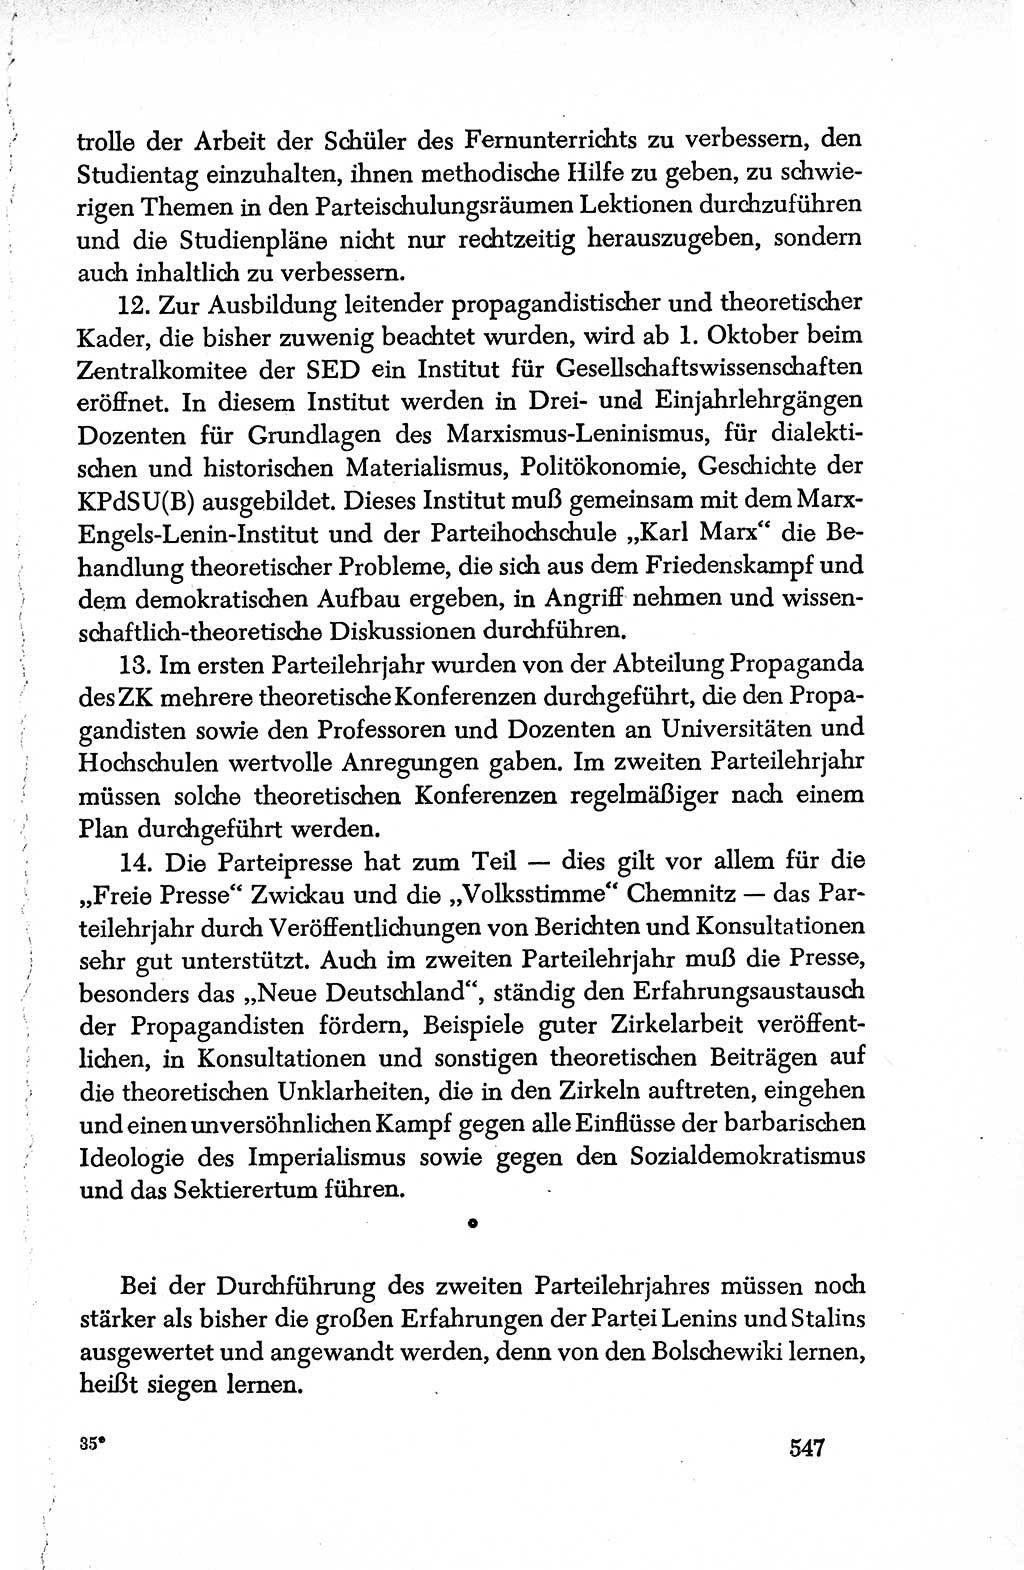 Dokumente der Sozialistischen Einheitspartei Deutschlands (SED) [Deutsche Demokratische Republik (DDR)] 1950-1952, Seite 547 (Dok. SED DDR 1950-1952, S. 547)